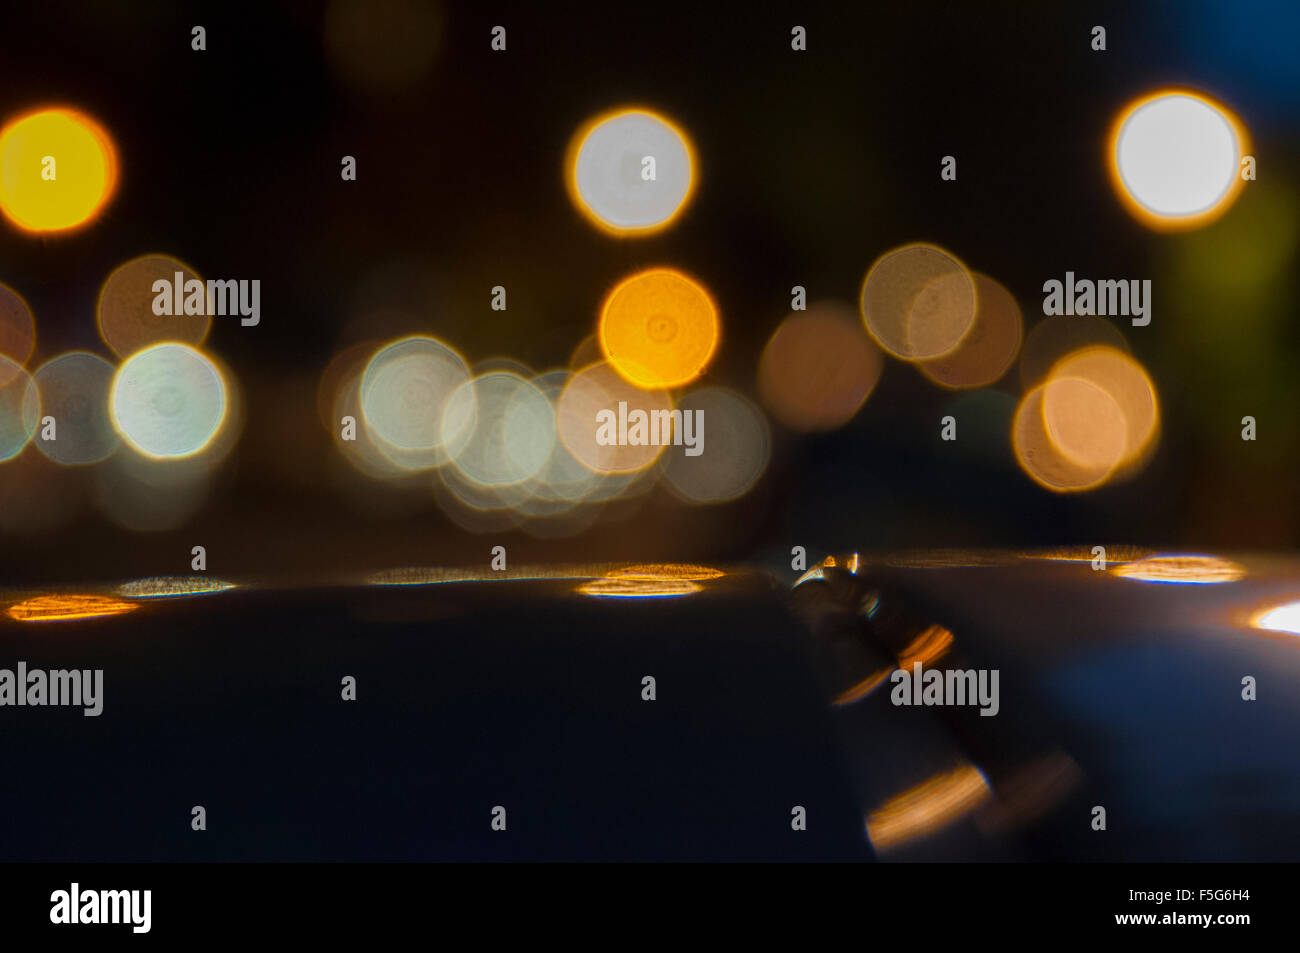 Una serie de luces círculo , tomada desde la distancia para dar este efecto fotográfico  Fotografía de stock - Alamy